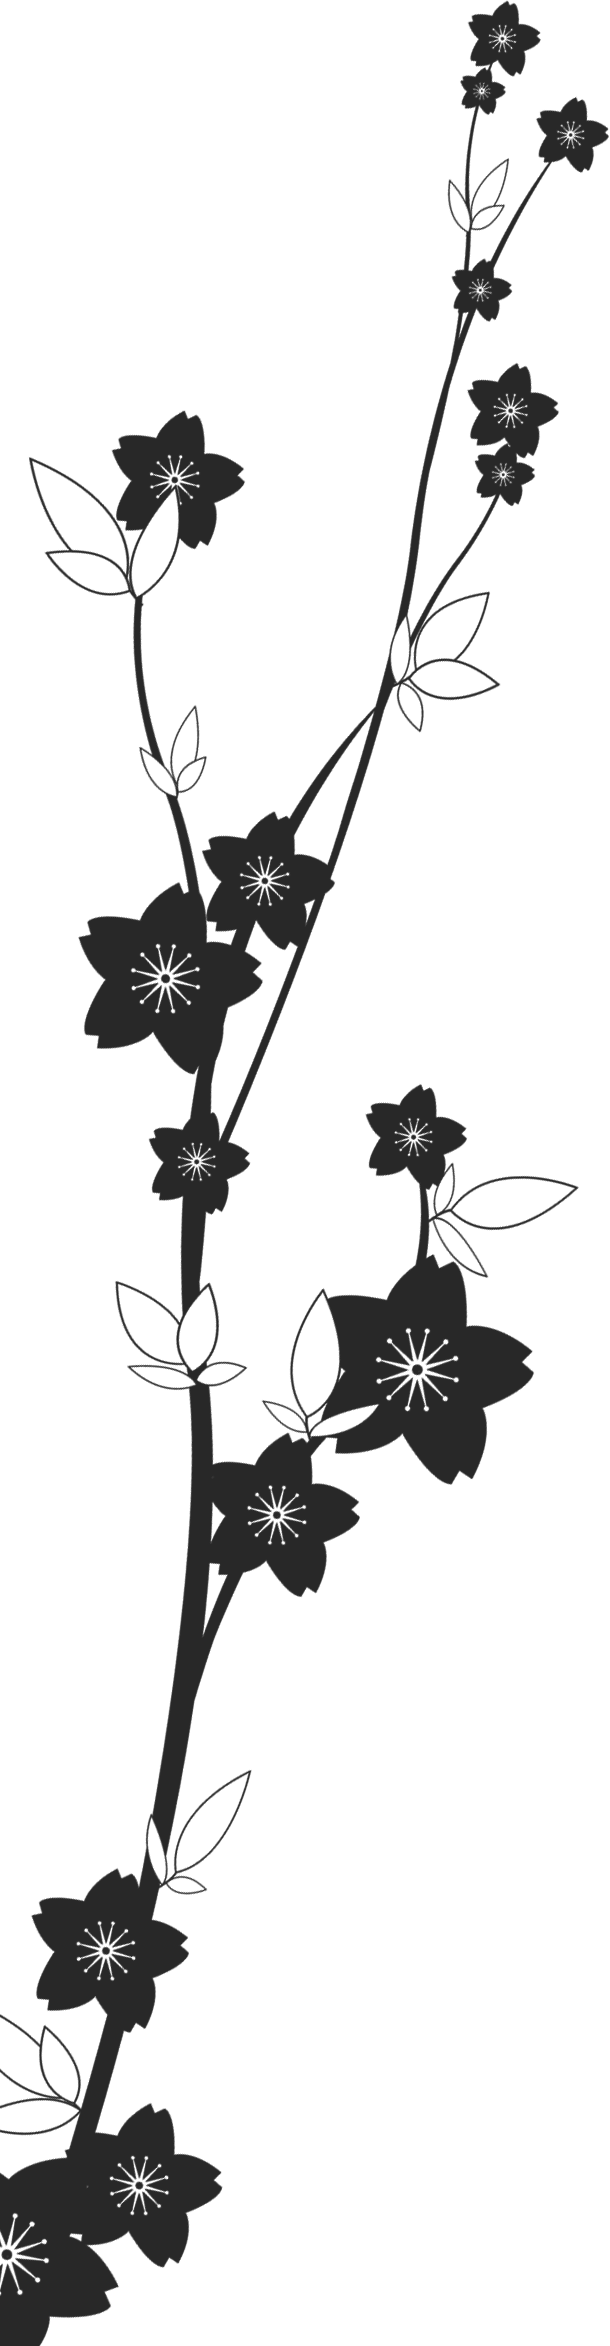 花のイラスト フリー素材 白黒 モノクロno 616 白黒 茎葉 桜型